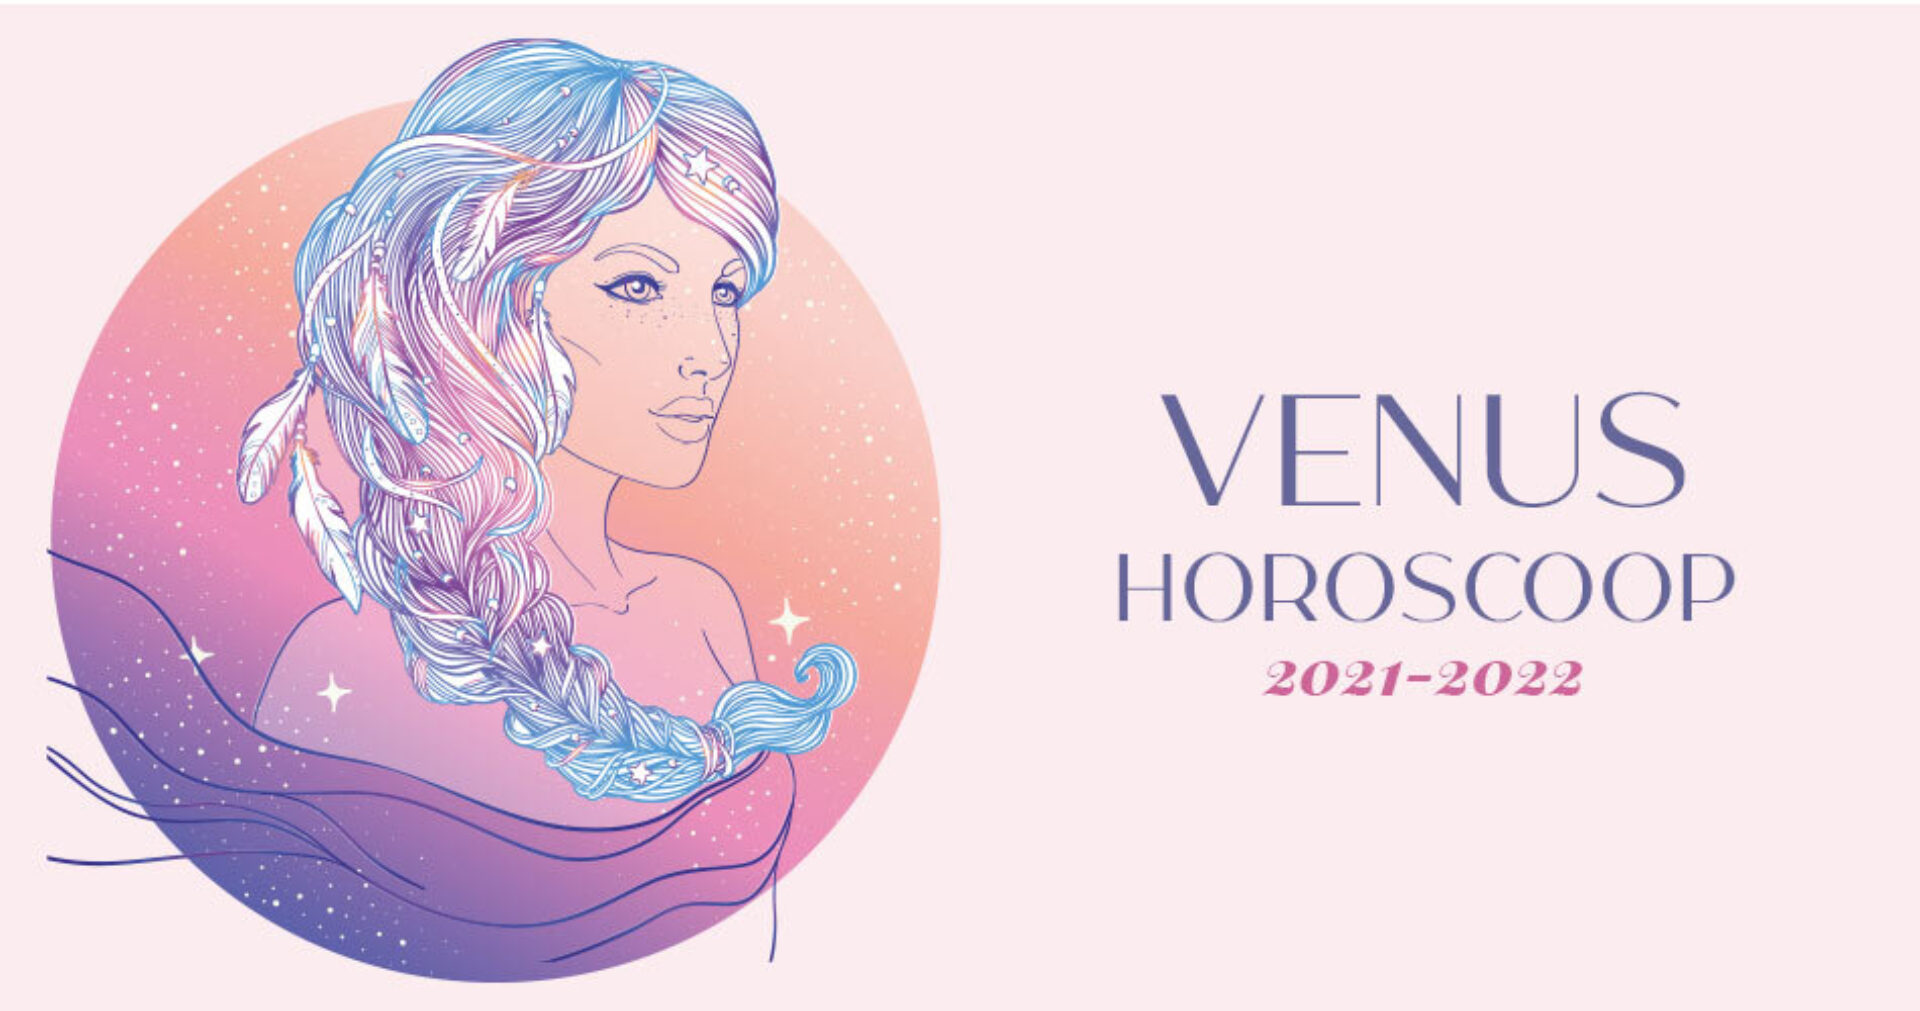 Venus Horoscoop juni 2021 - mei 2022: jouw liefdesleven en financiën in the picture